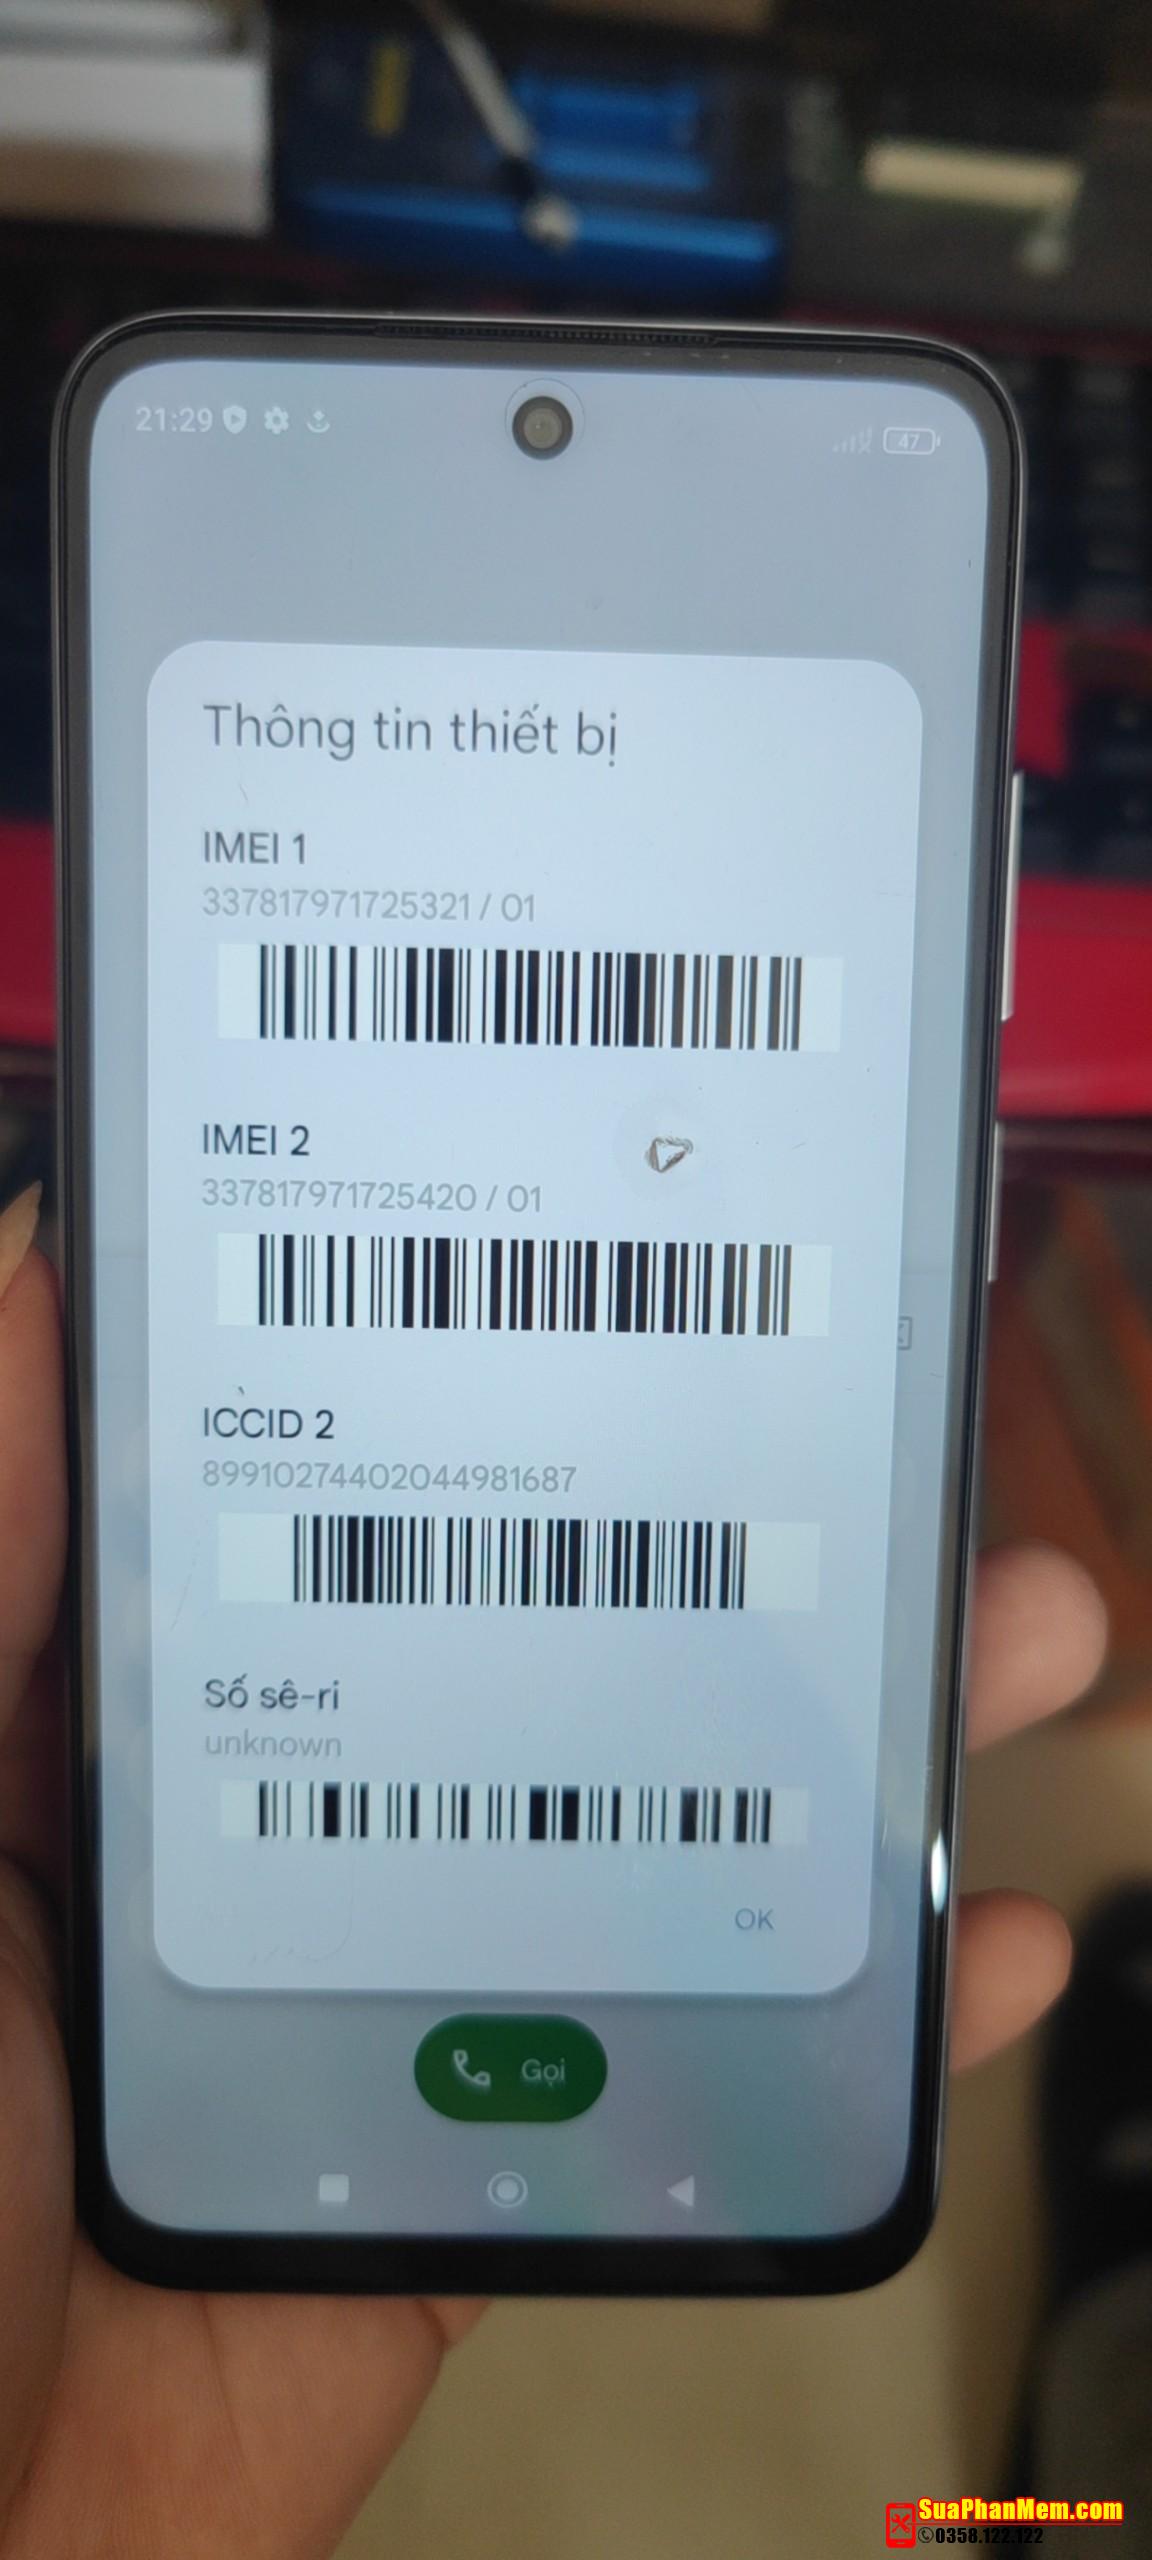 Repair imei Xiaomi Redmi 10 | NV data corrupted (selene)